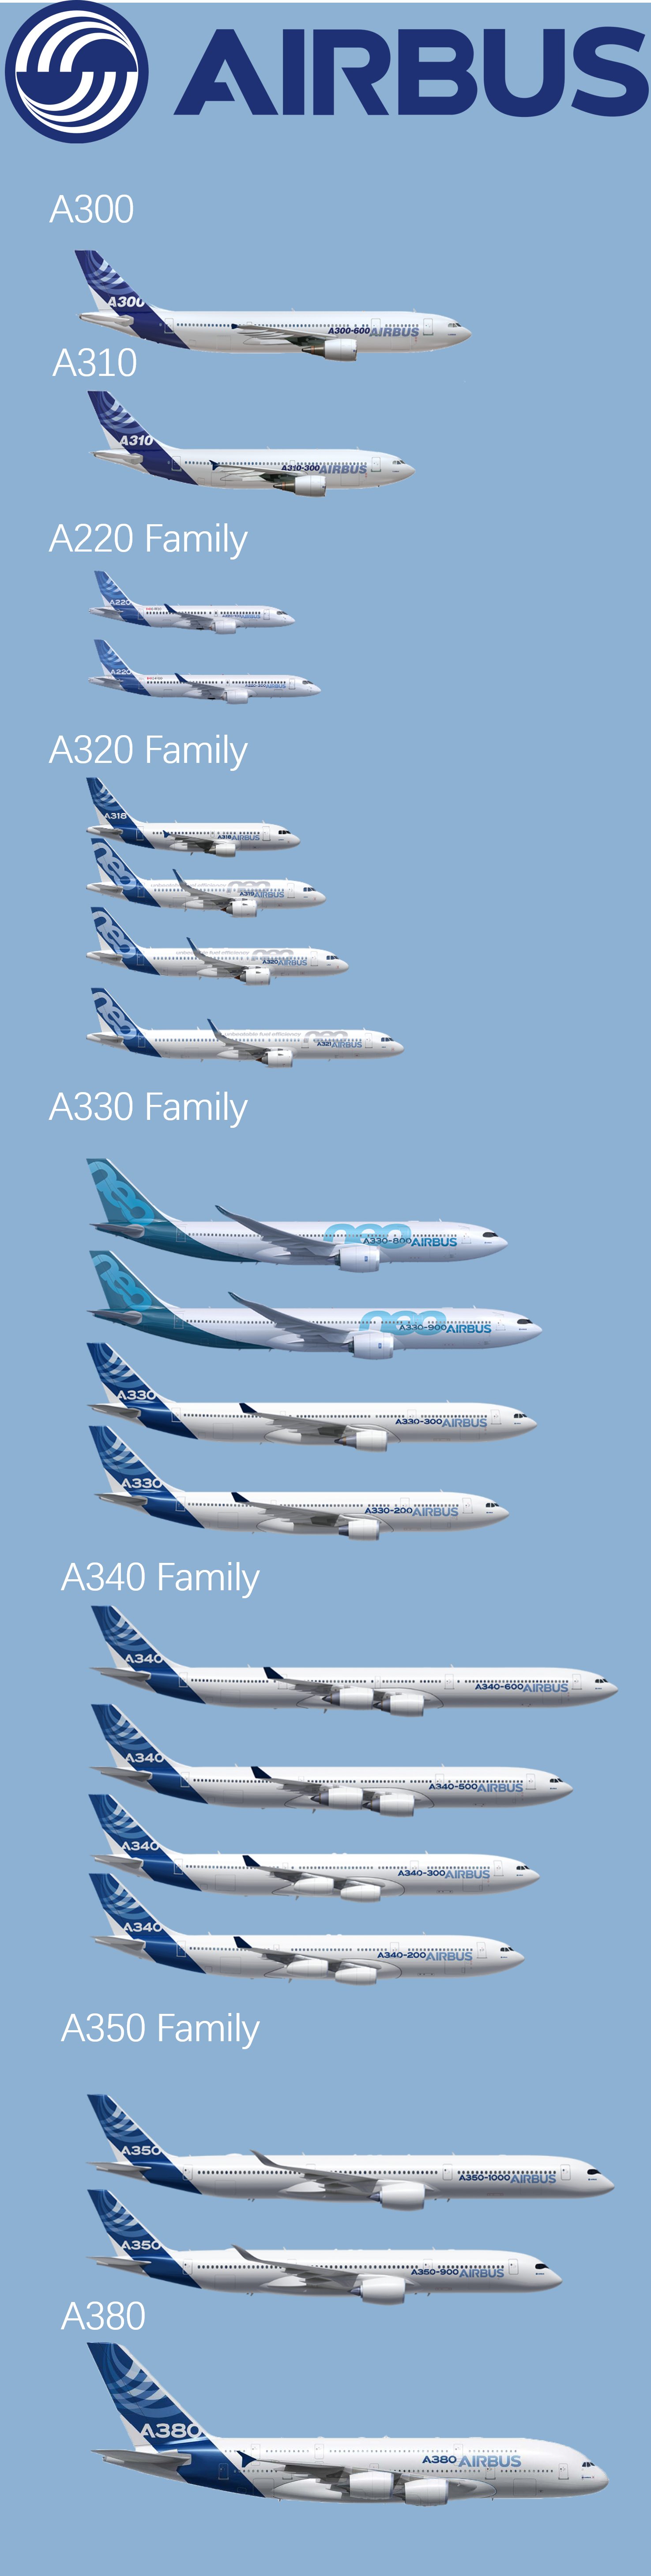 空客主要飞机型号一览